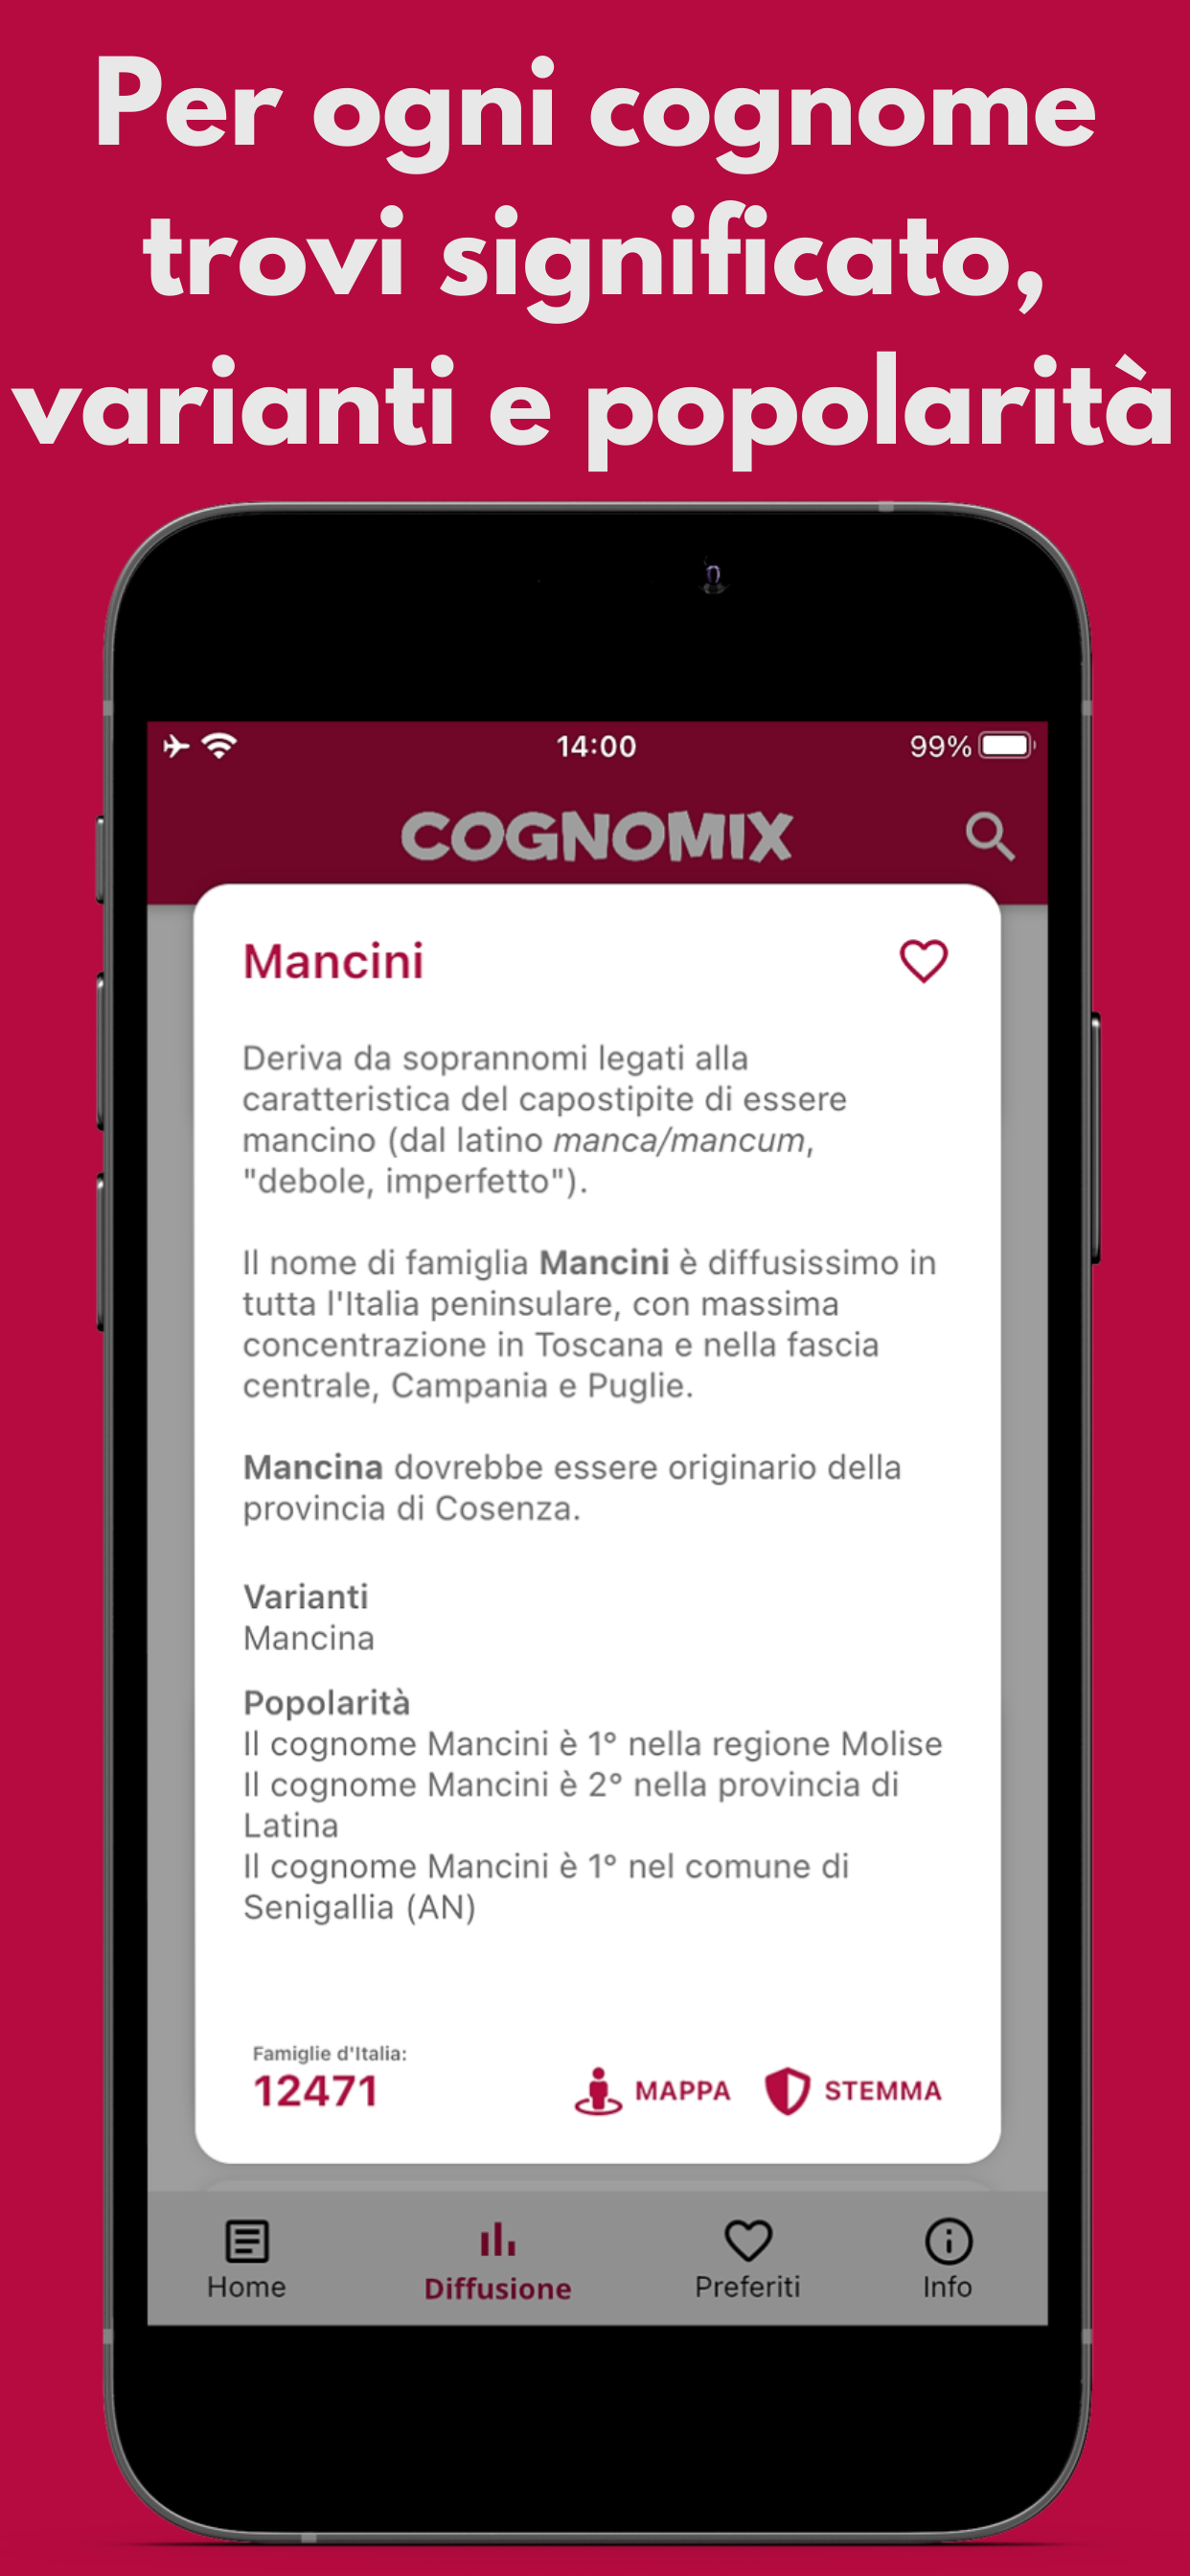 Applicazione Cognomi Italiani di Cognomix